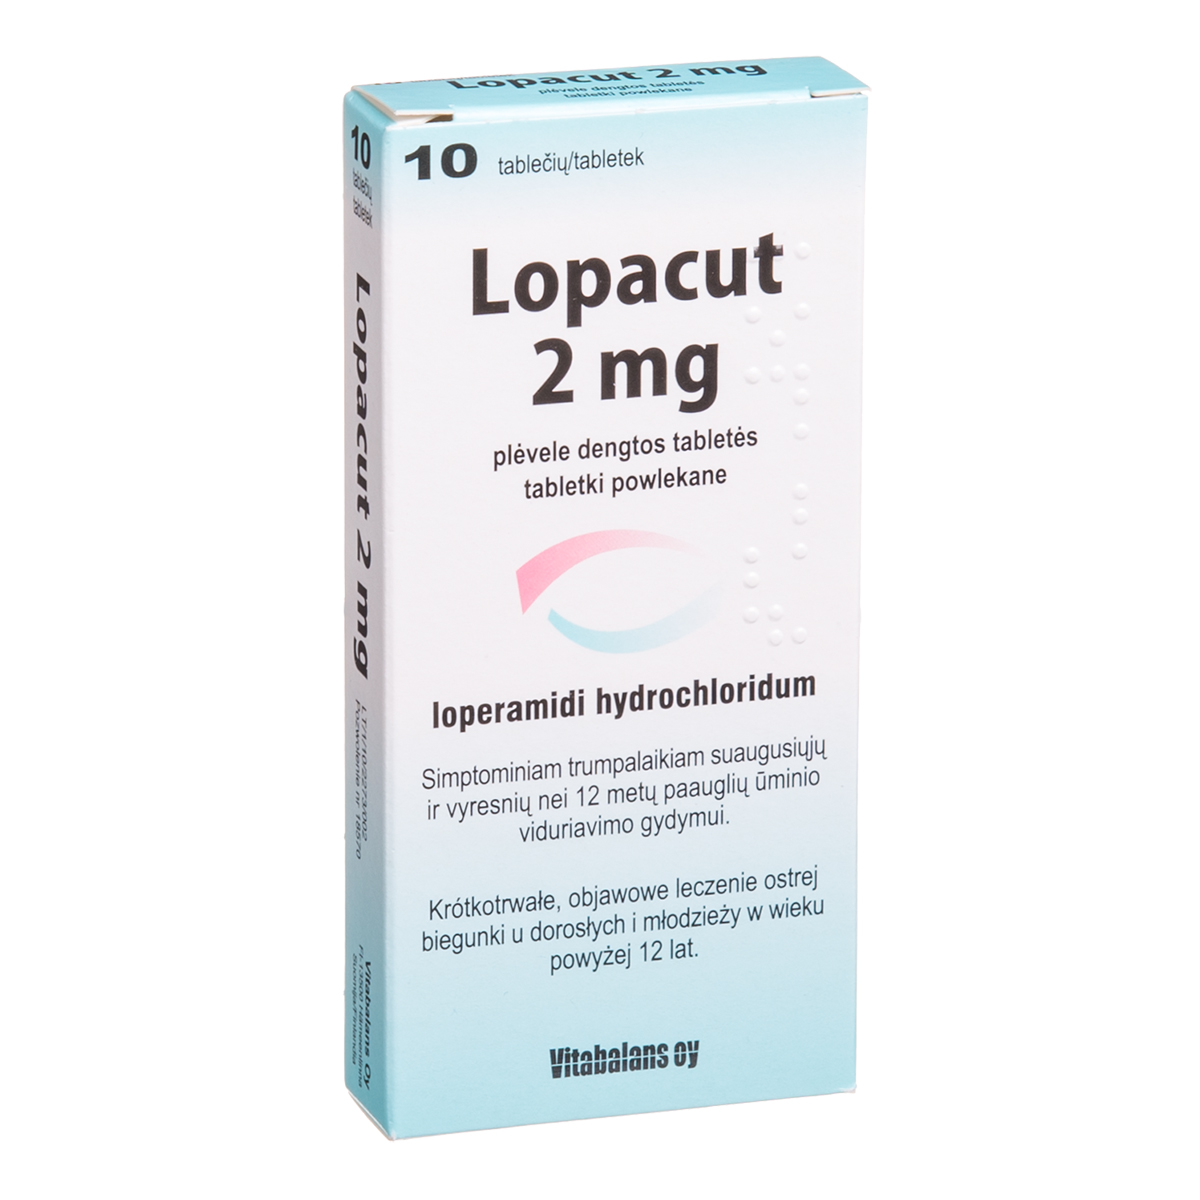 LOPACUT, 2 mg, plėvele dengtos tabletės, N10